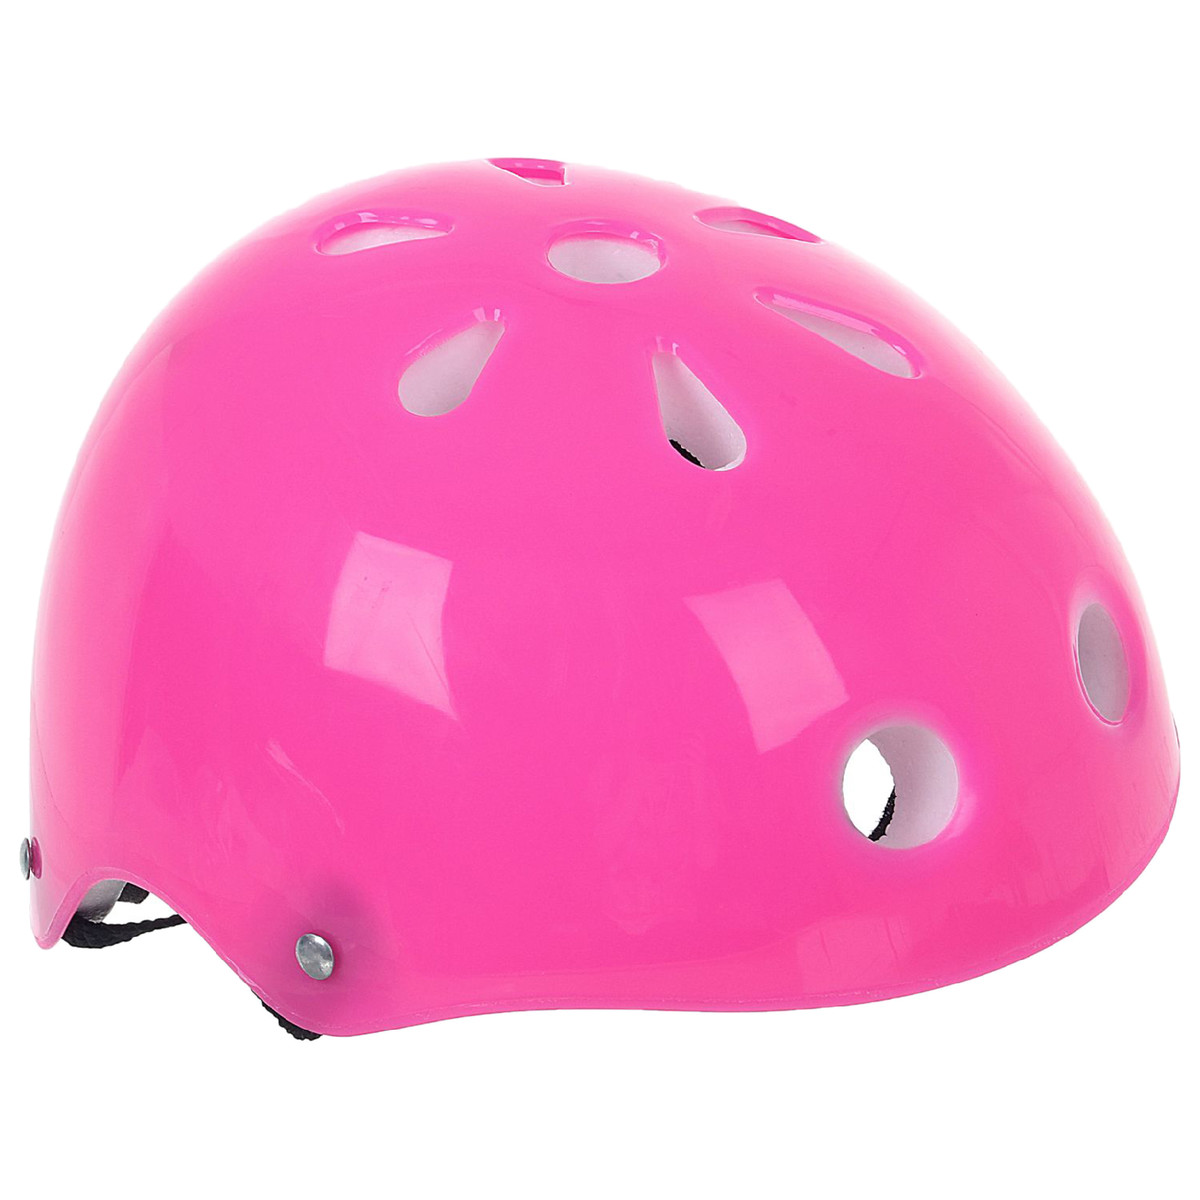 Шлем защитный детский onlytop ot-s507, обхват 55 см, цвет розовый шлем защитный детский onlytop без регулировки обхват 55 см розовый